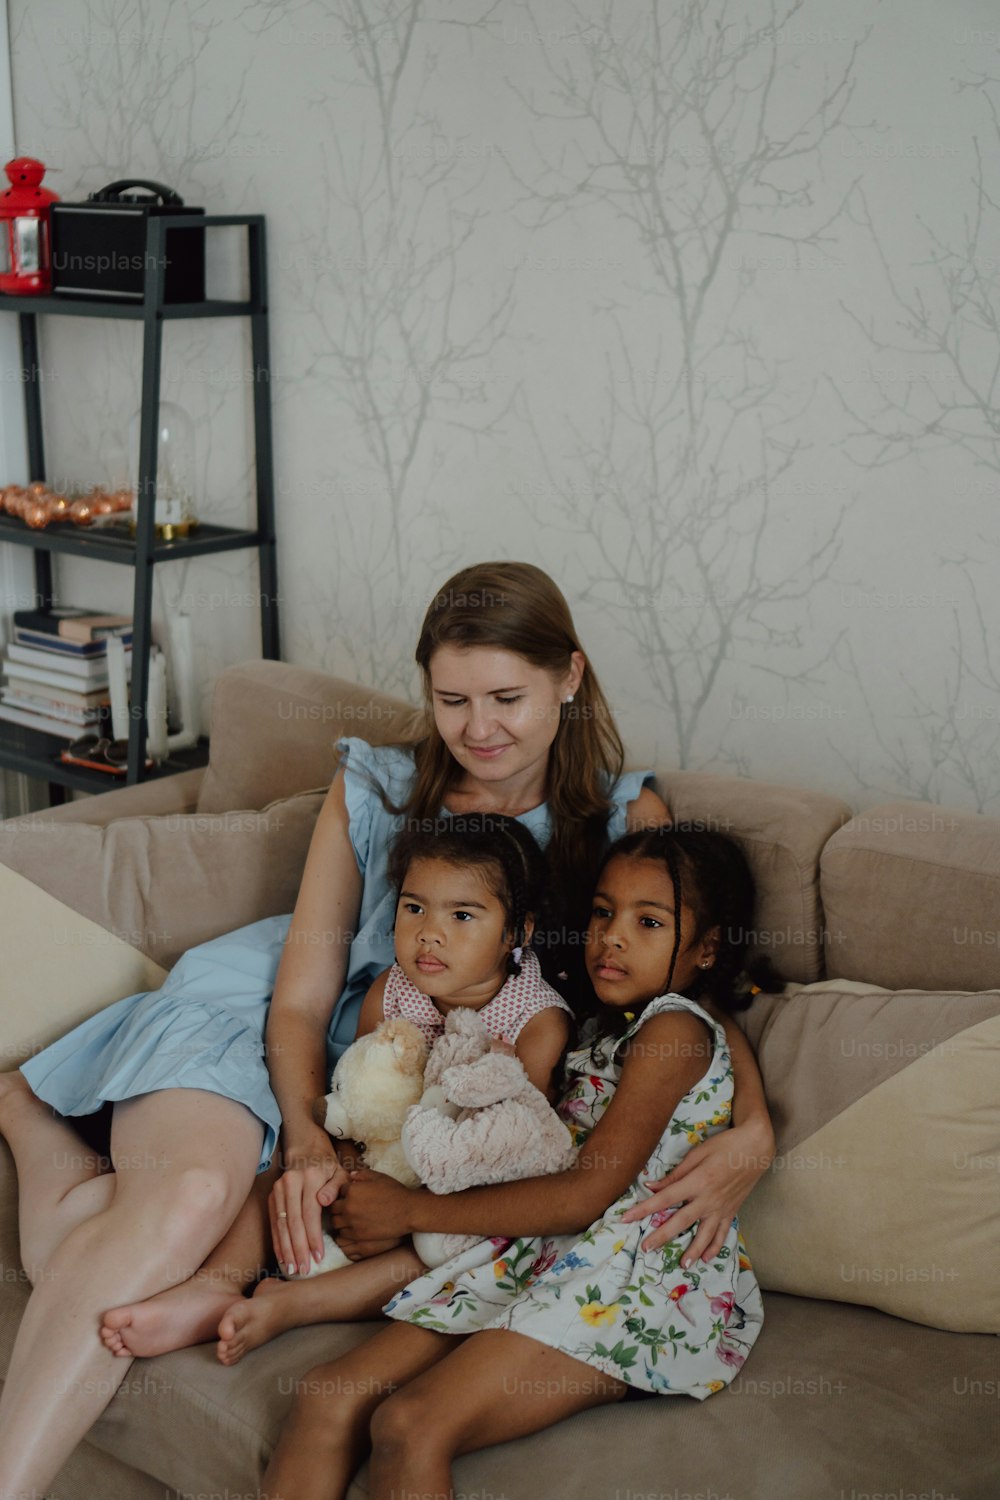 Una mujer sentada en un sofá con dos niños